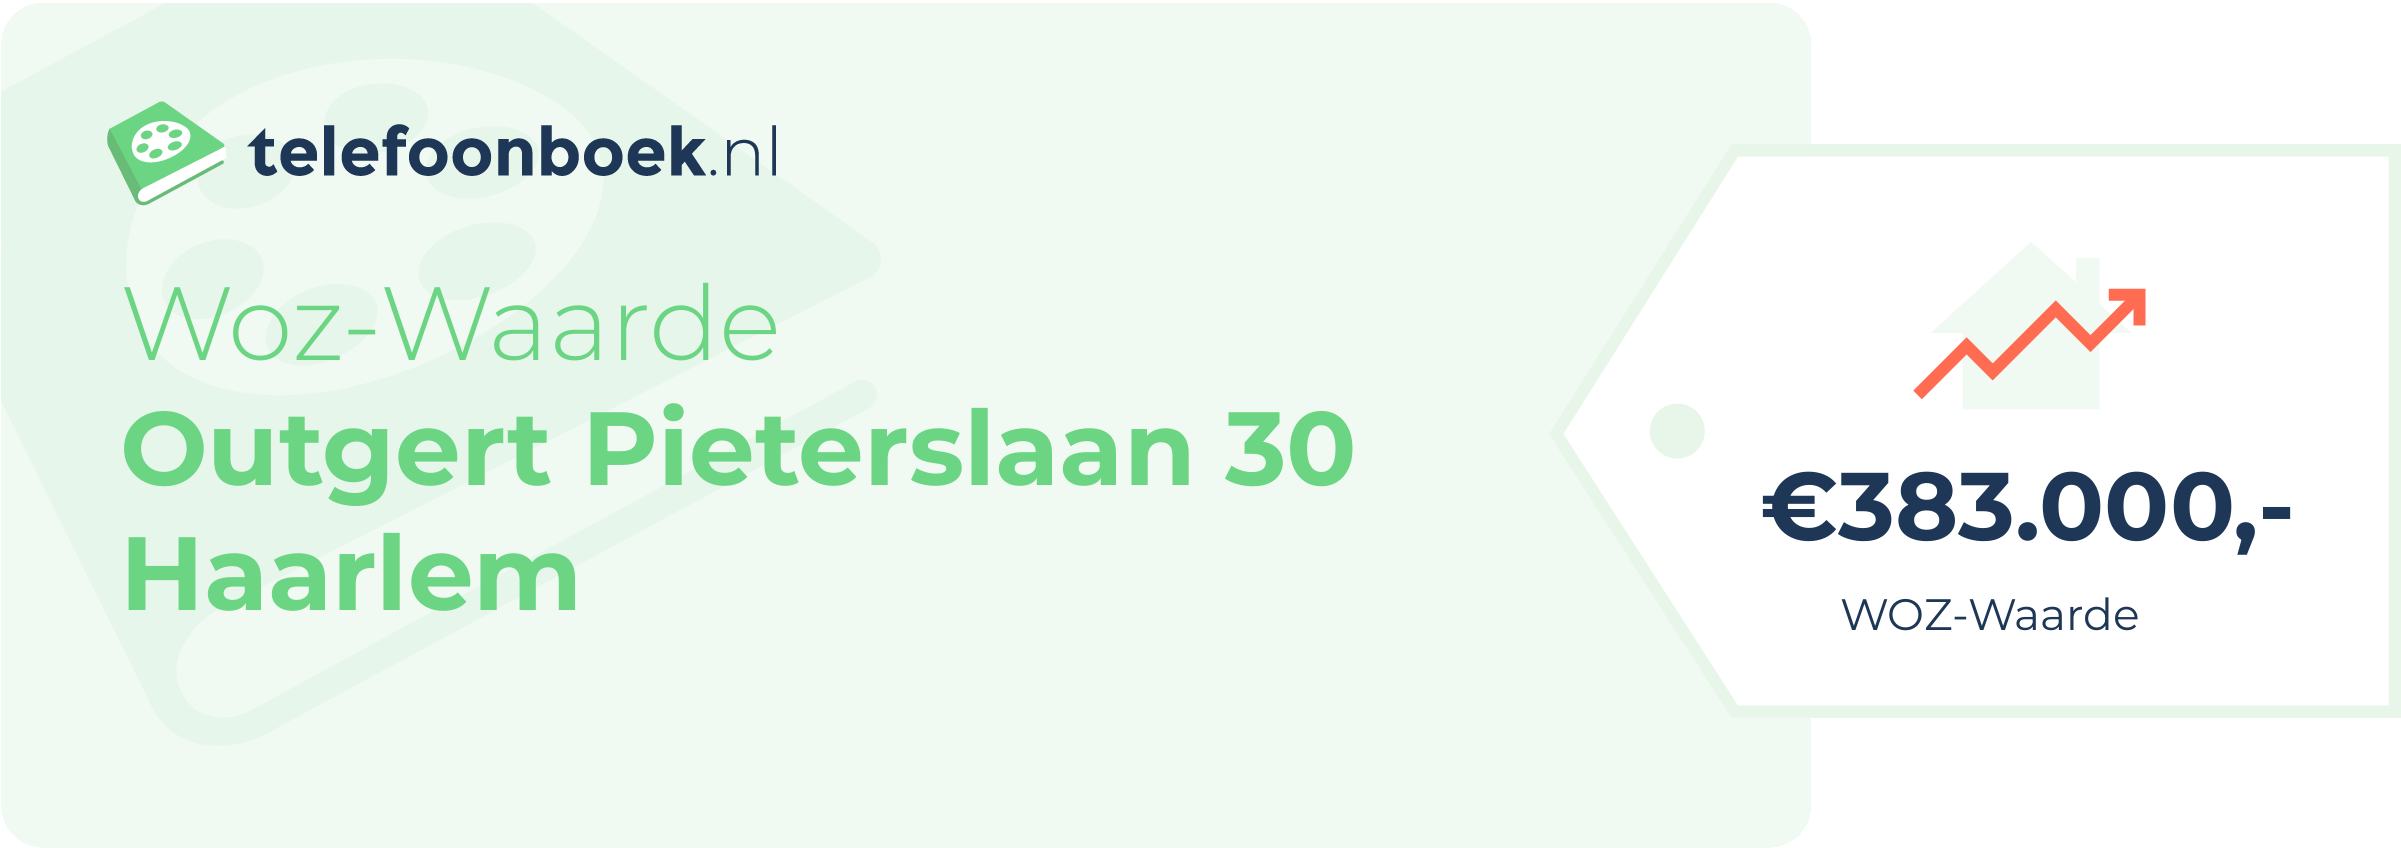 WOZ-waarde Outgert Pieterslaan 30 Haarlem